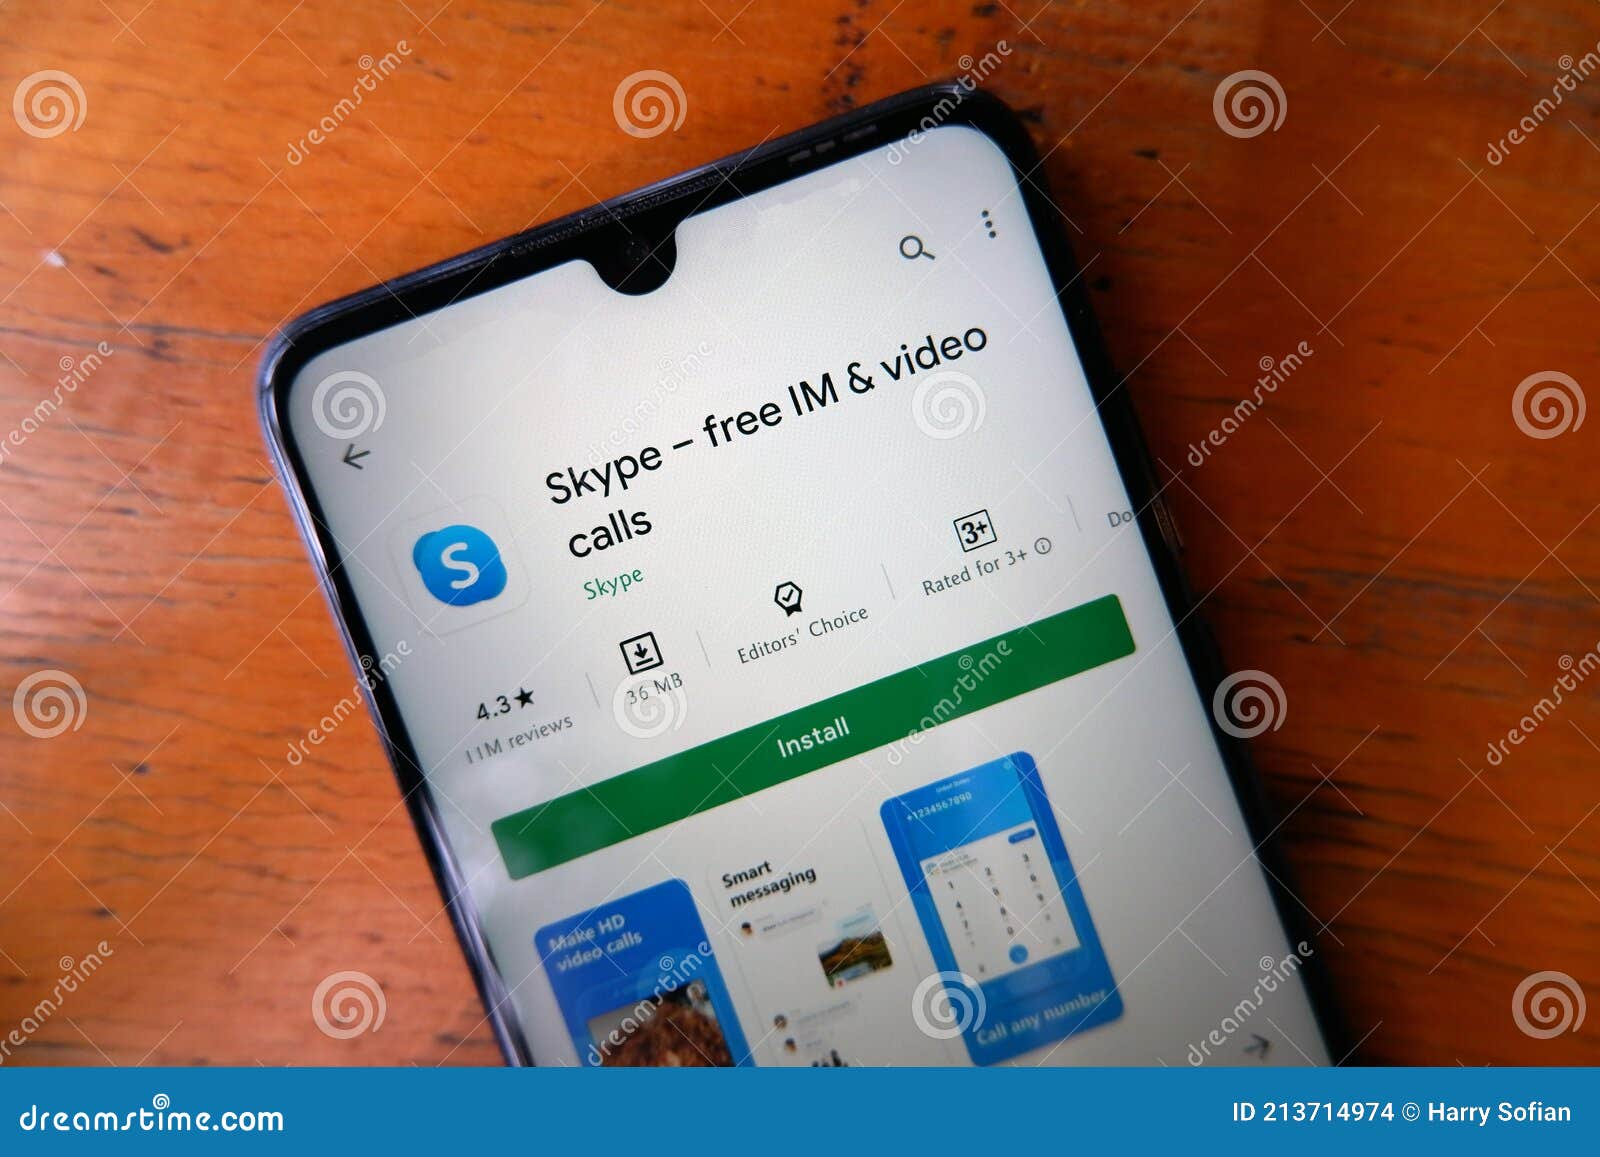 skype video call free